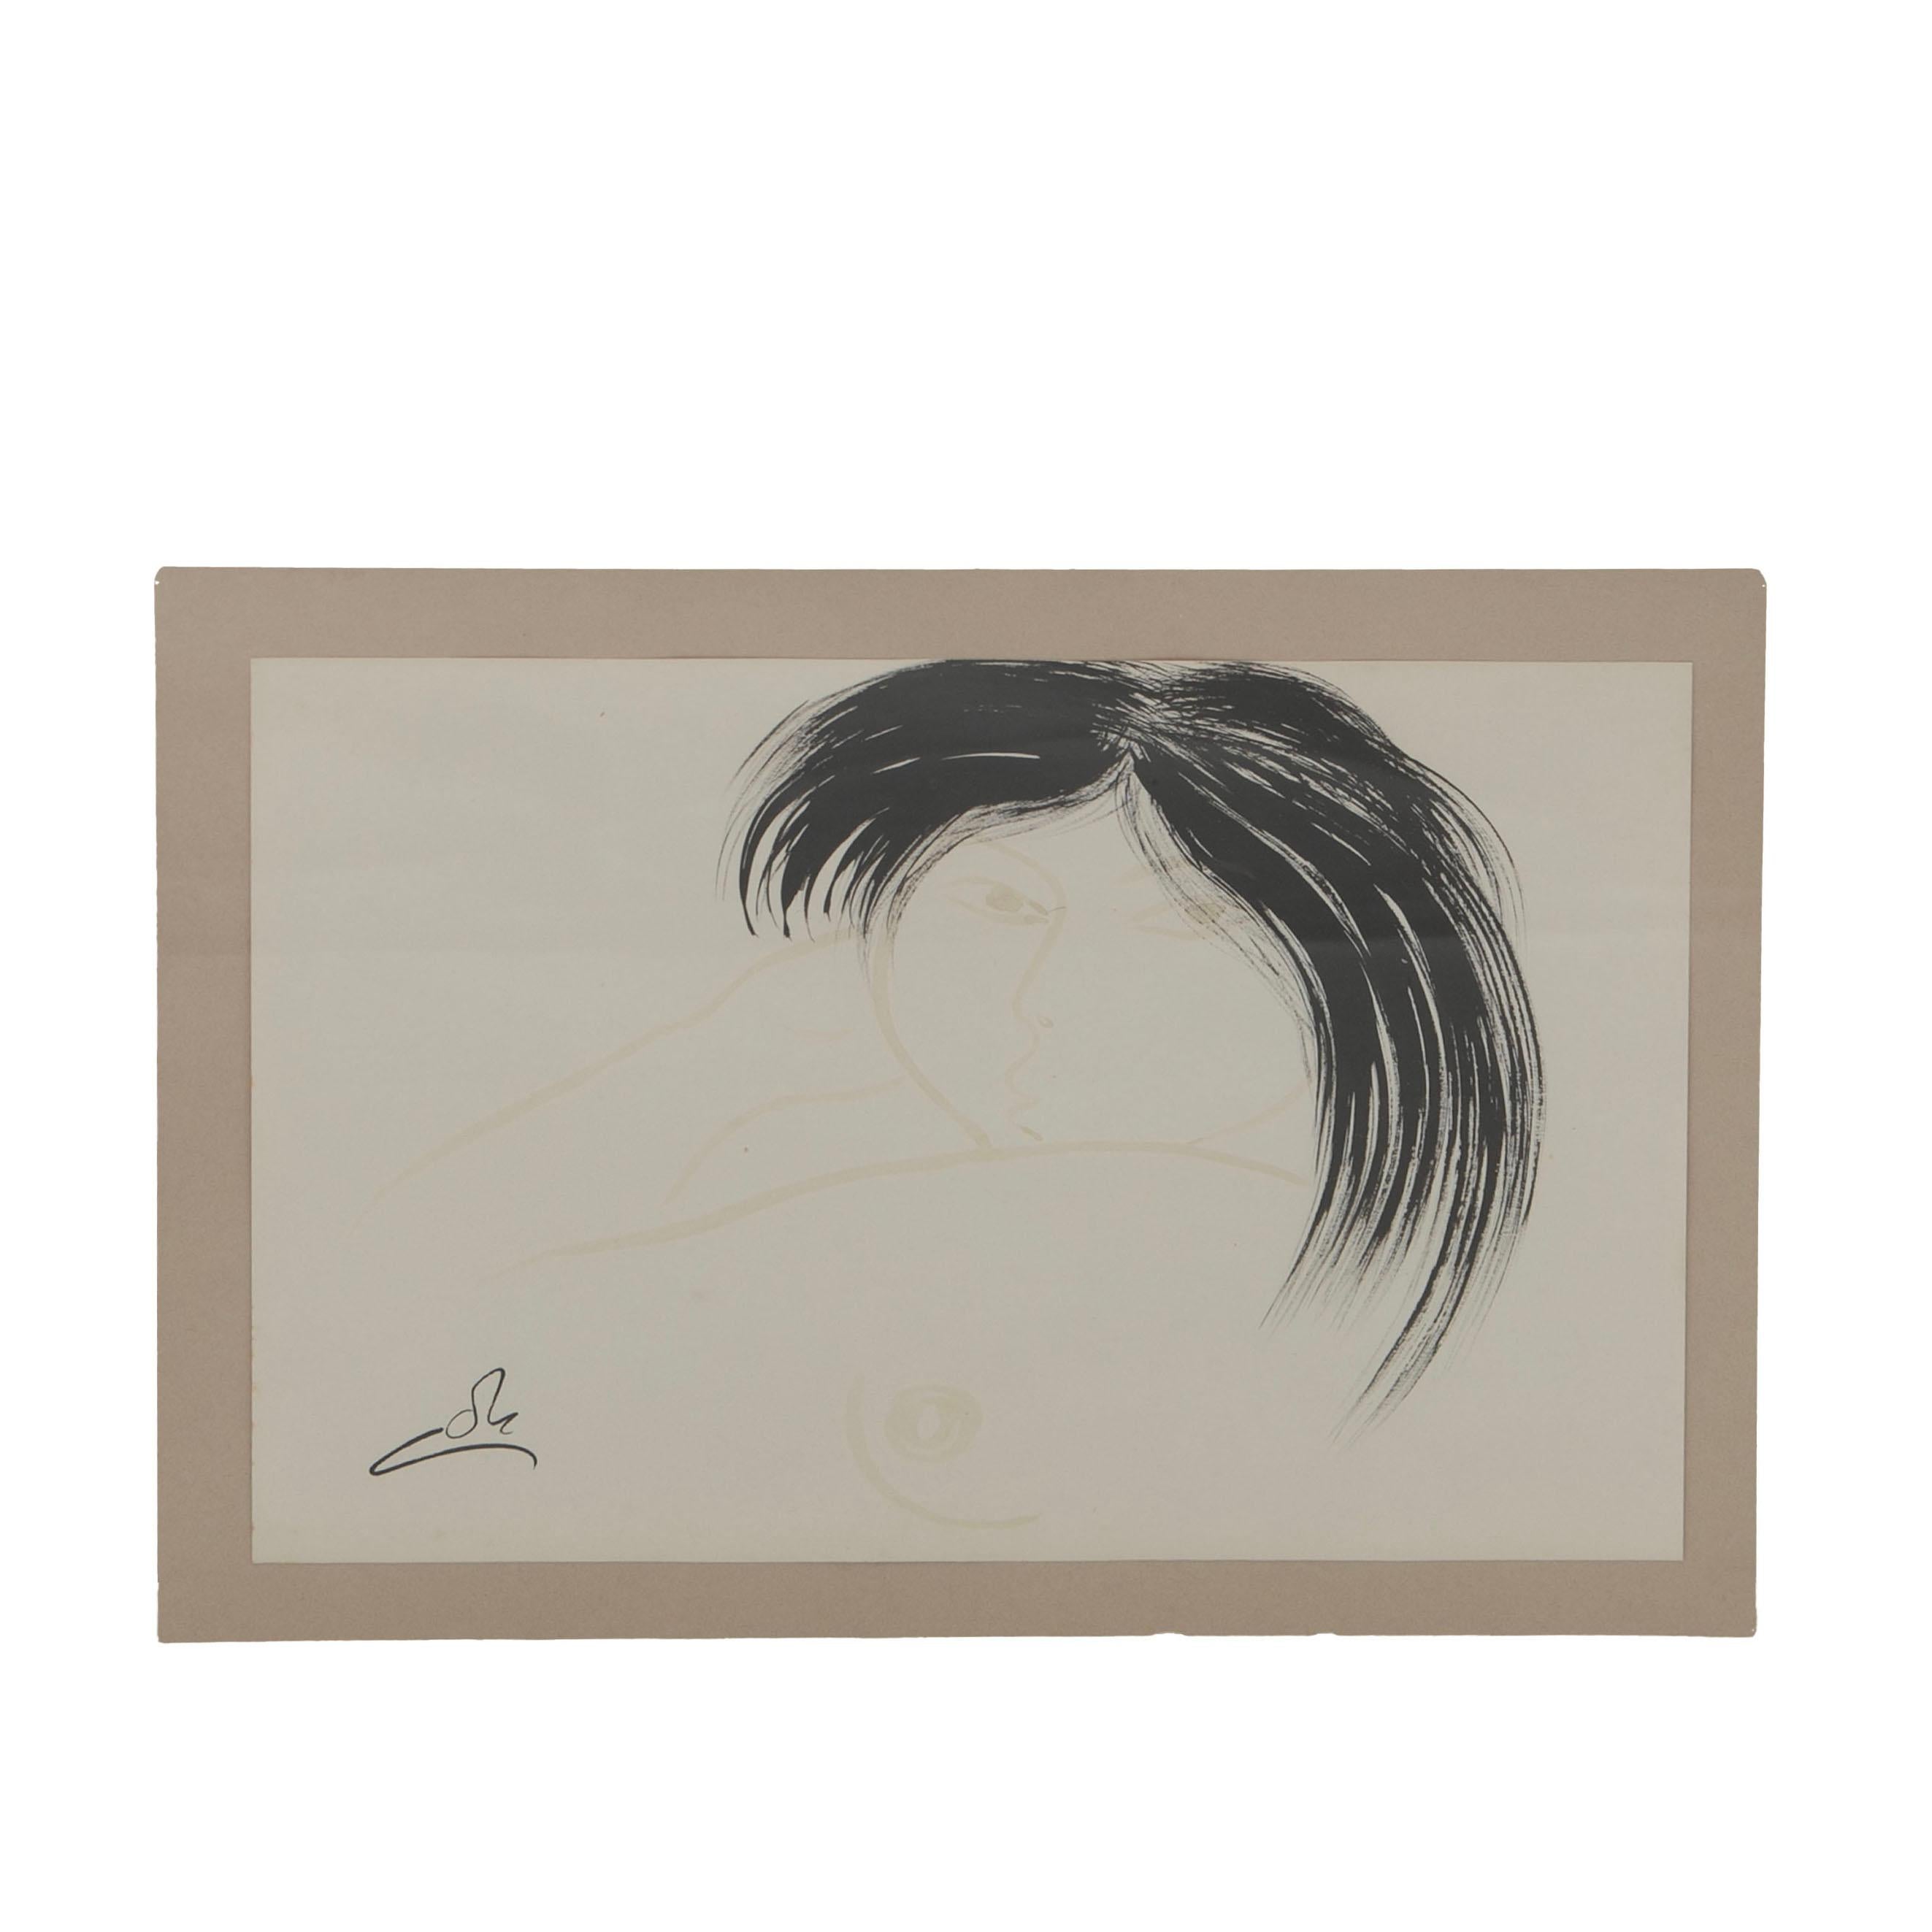 Aage Gitz-Johansen (danois, 1897-1977)
Dessin à l'aquarelle et au marqueur représentant une jeune femme groenlandaise. 

La feuille mesure : 27,5 cm x 36,5 cm.

Signé avec un monogramme